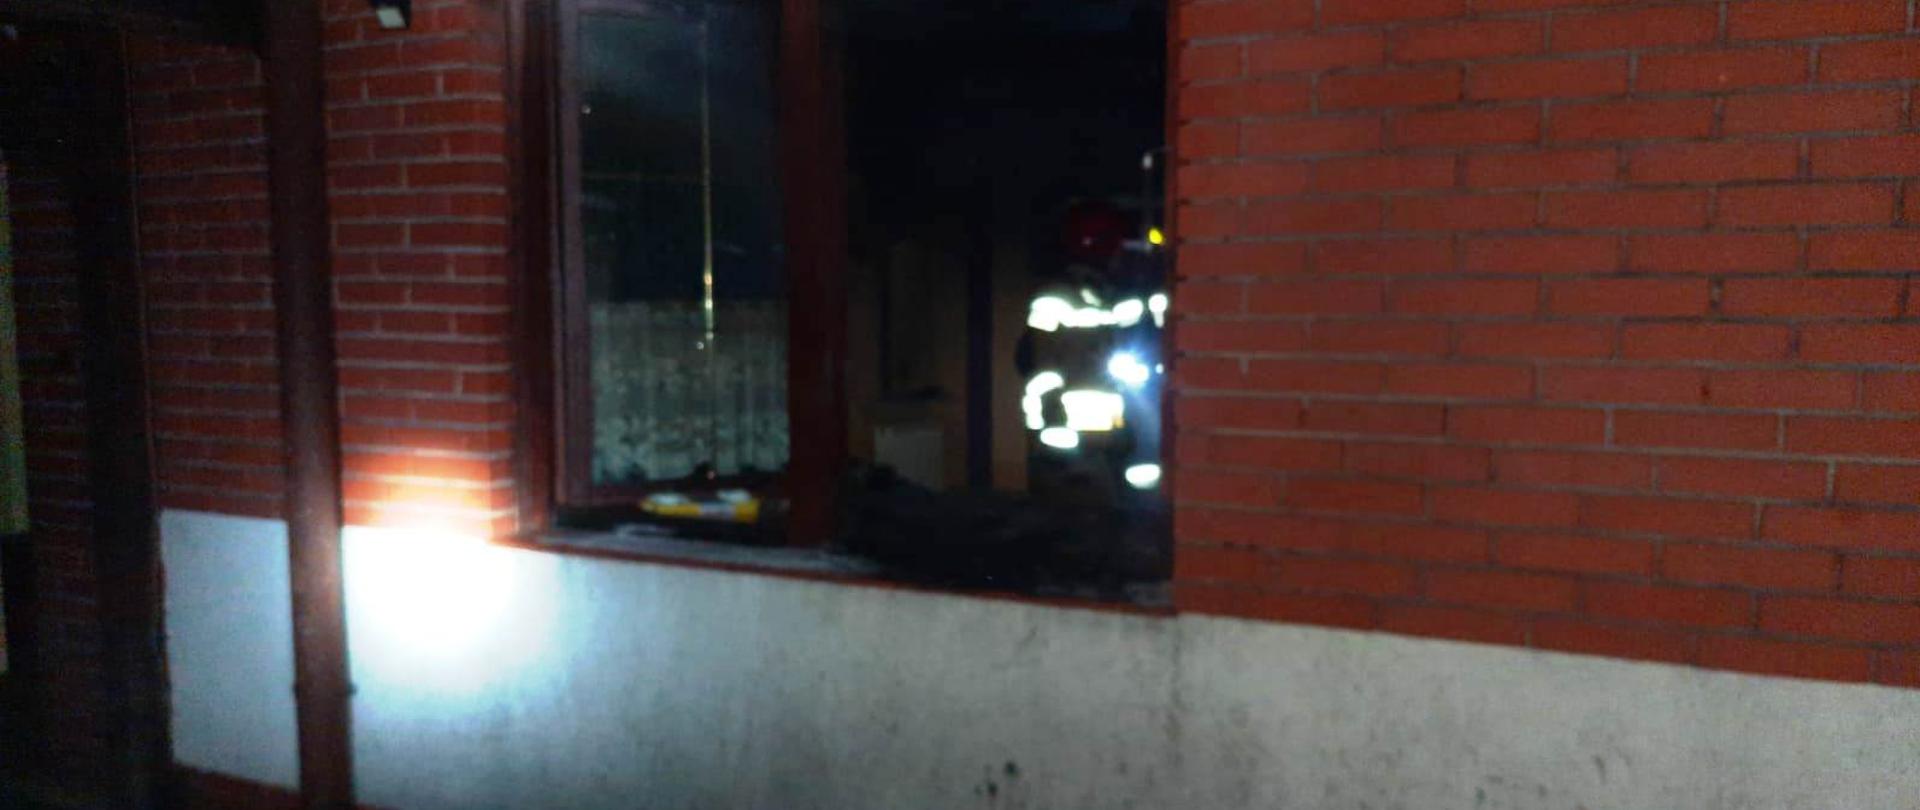 Na zdjęciu widać porze otwarte oknostrażaka znajdującego się w budynku mieszkalnym na parterze., który sprawdza kuchnię po pożarze oleju.